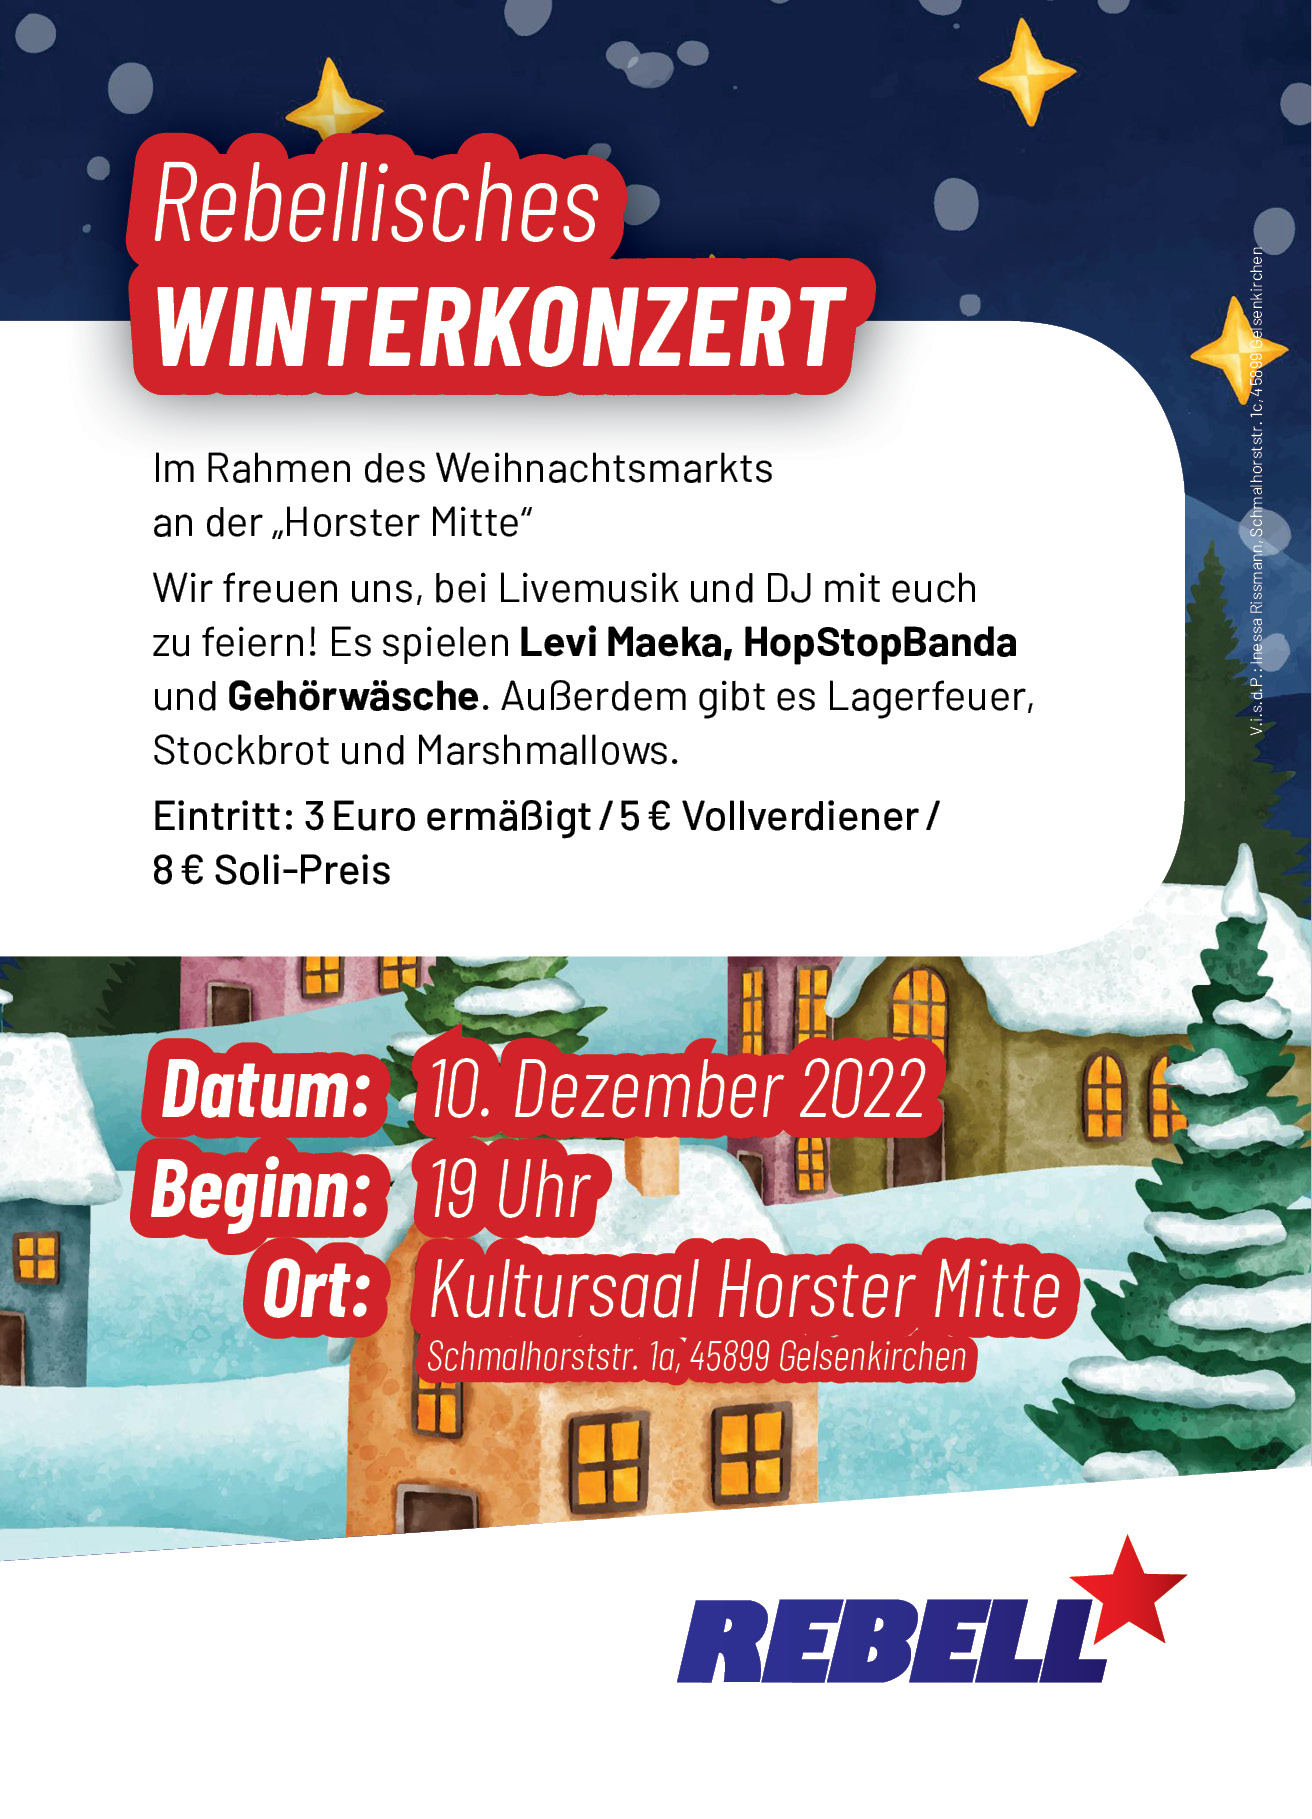 You are currently viewing Der Jugendverband REBELL lädt ein: Rebellisches Winterkonzert am 10. Dezember 2022!